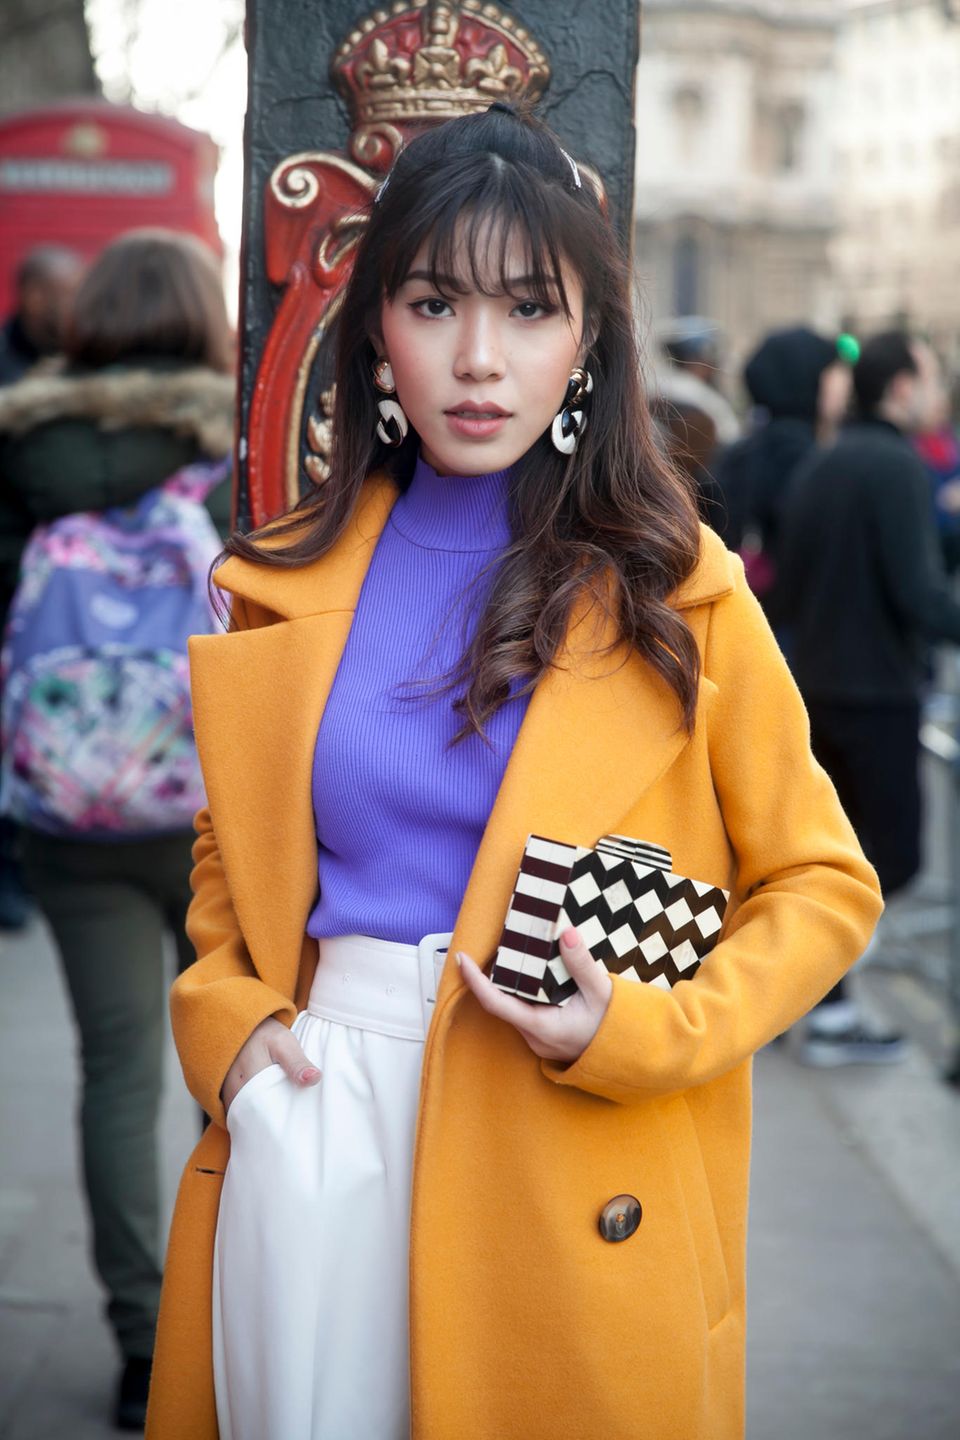 Frisuren mit Haarspangen: Frau im gelben Mantel